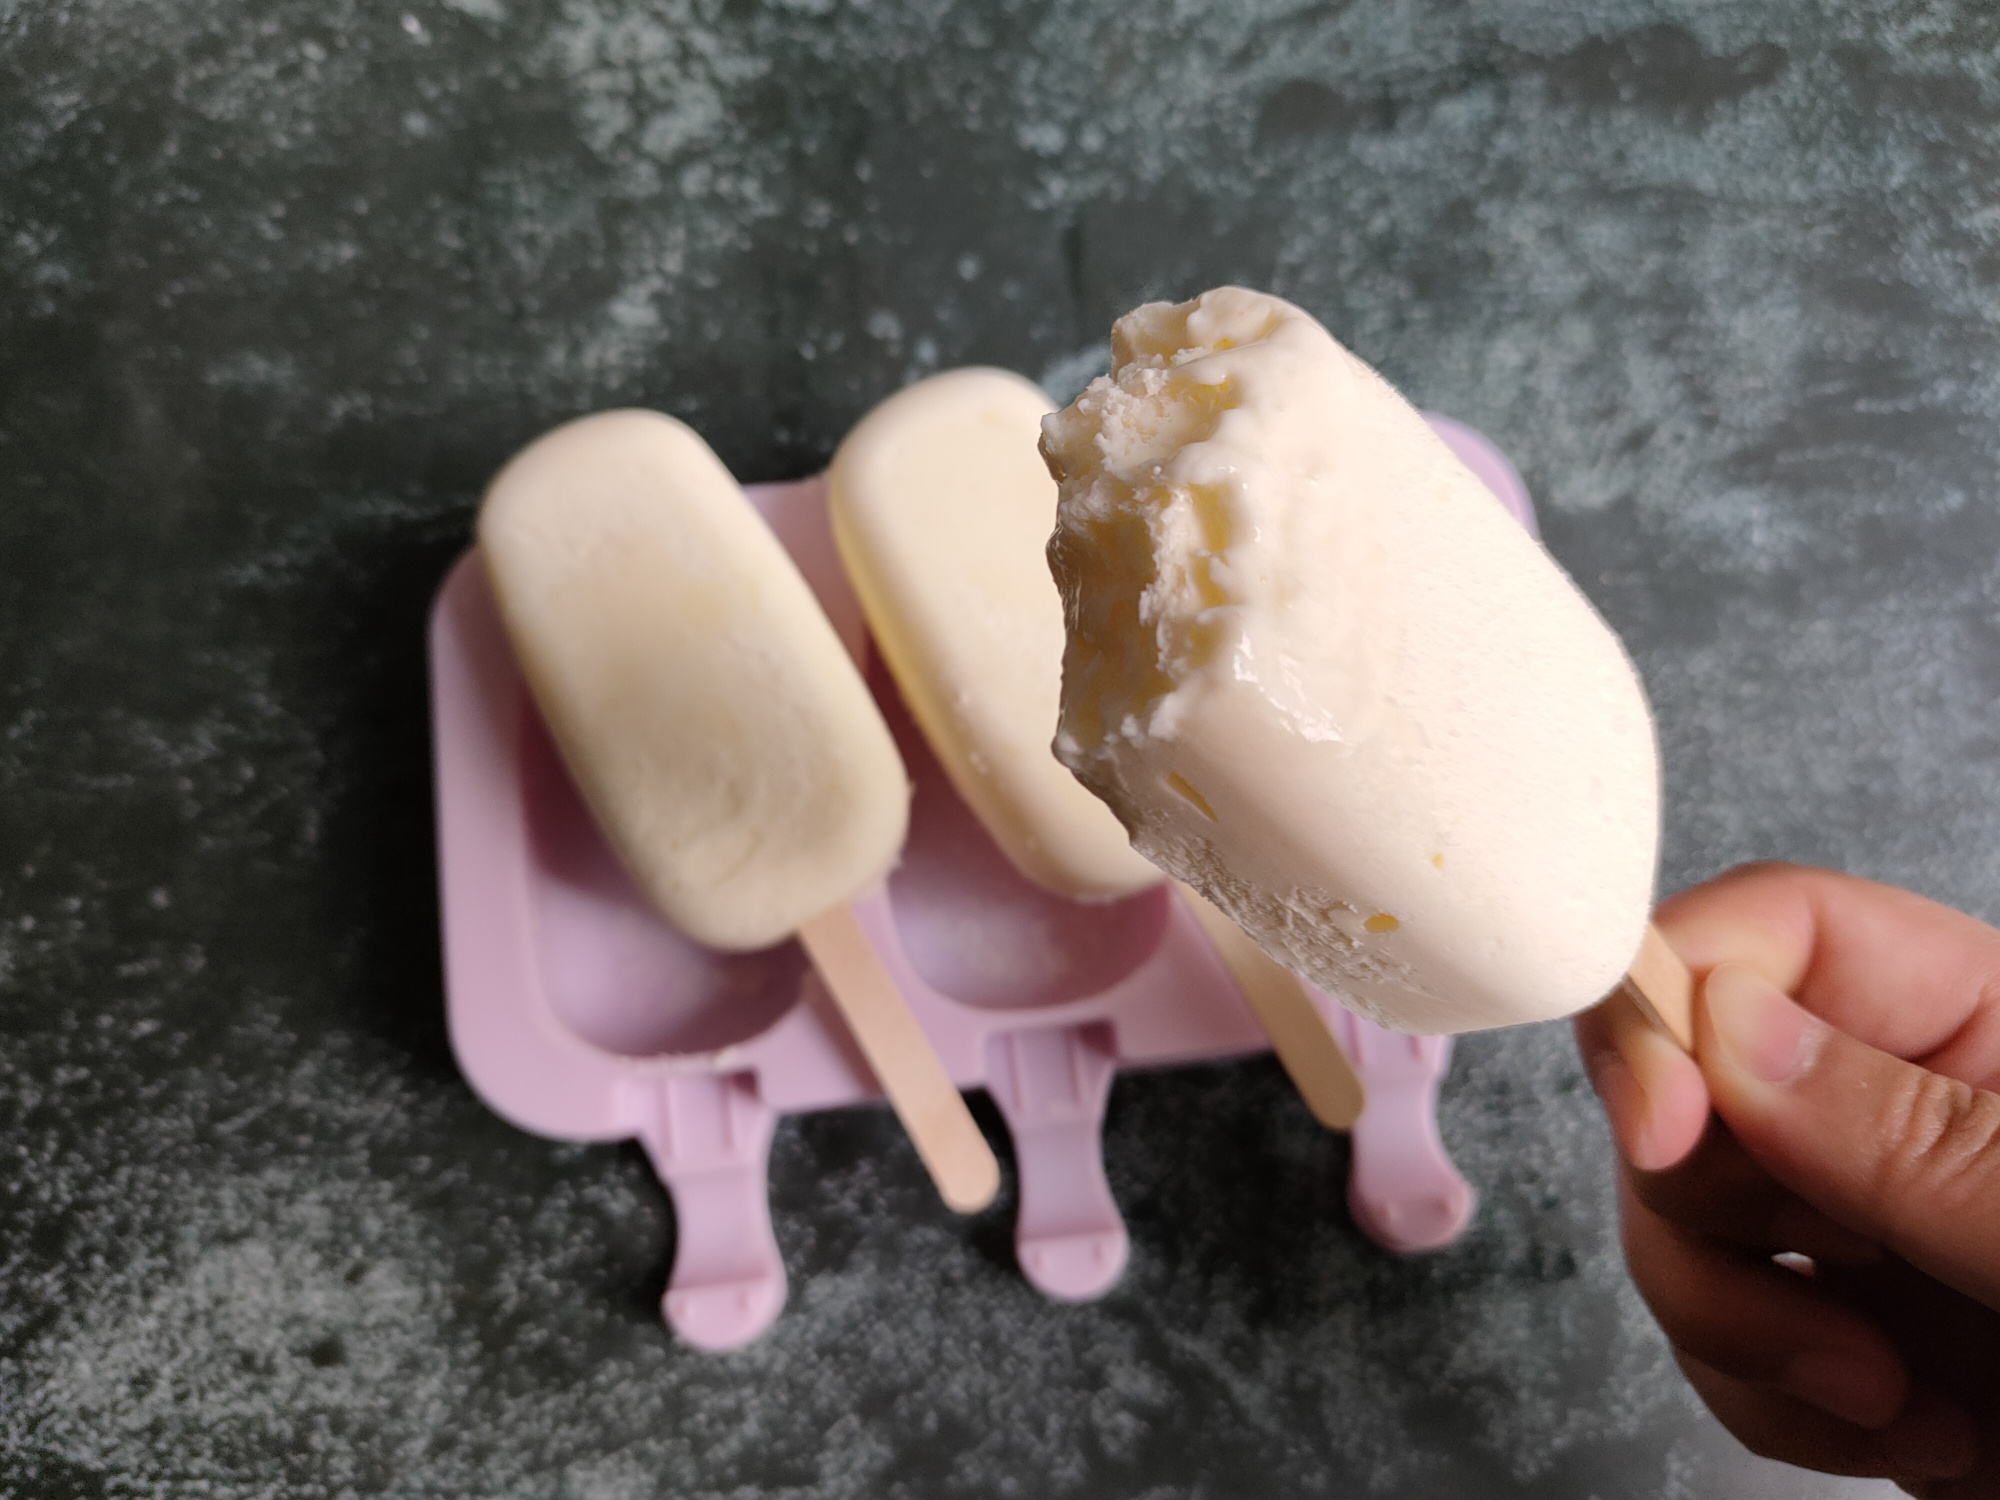 把牛奶倒进锅里，简单几步就能做出小布丁雪糕，香甜松软无冰渣